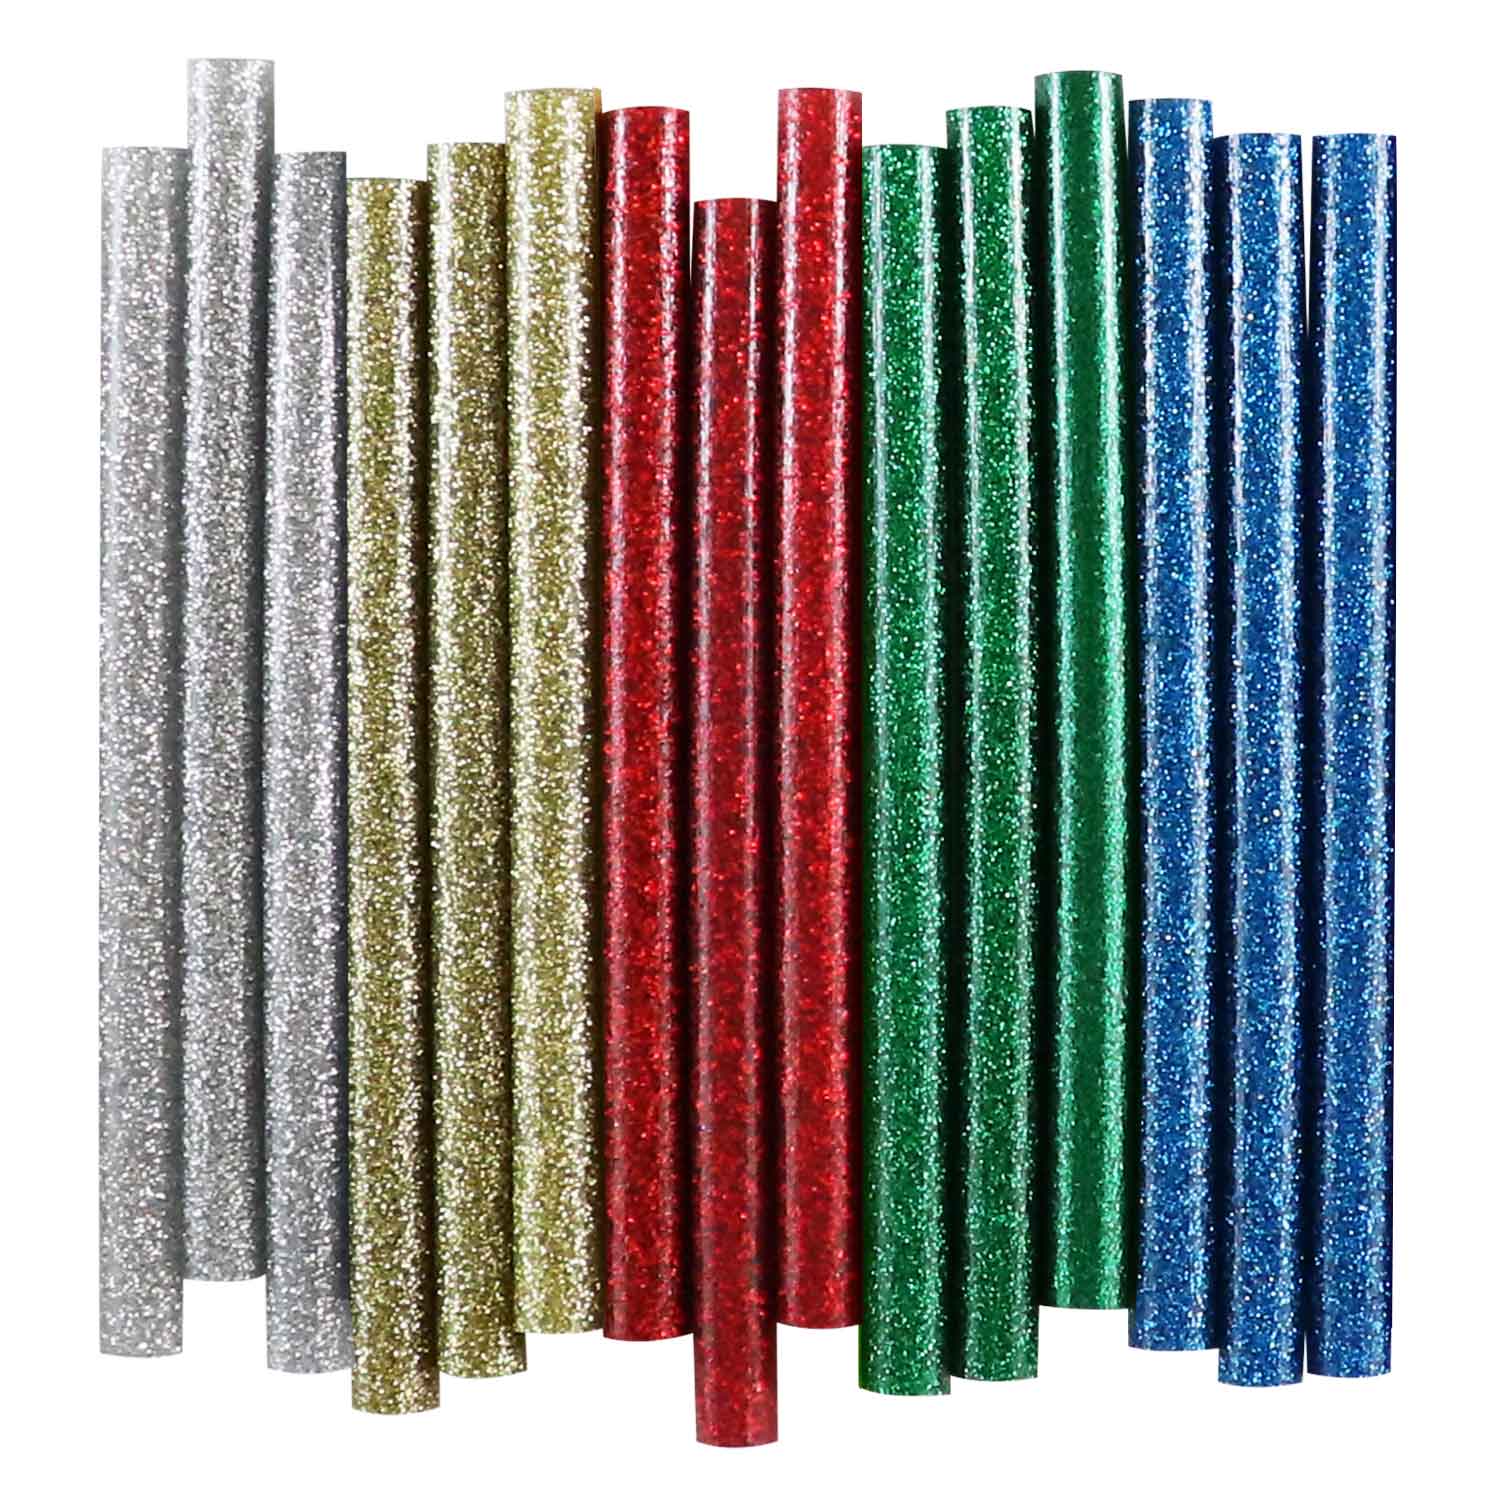 Glitter Mini Glue Sticks 4 12/Pkg - NOTM206914